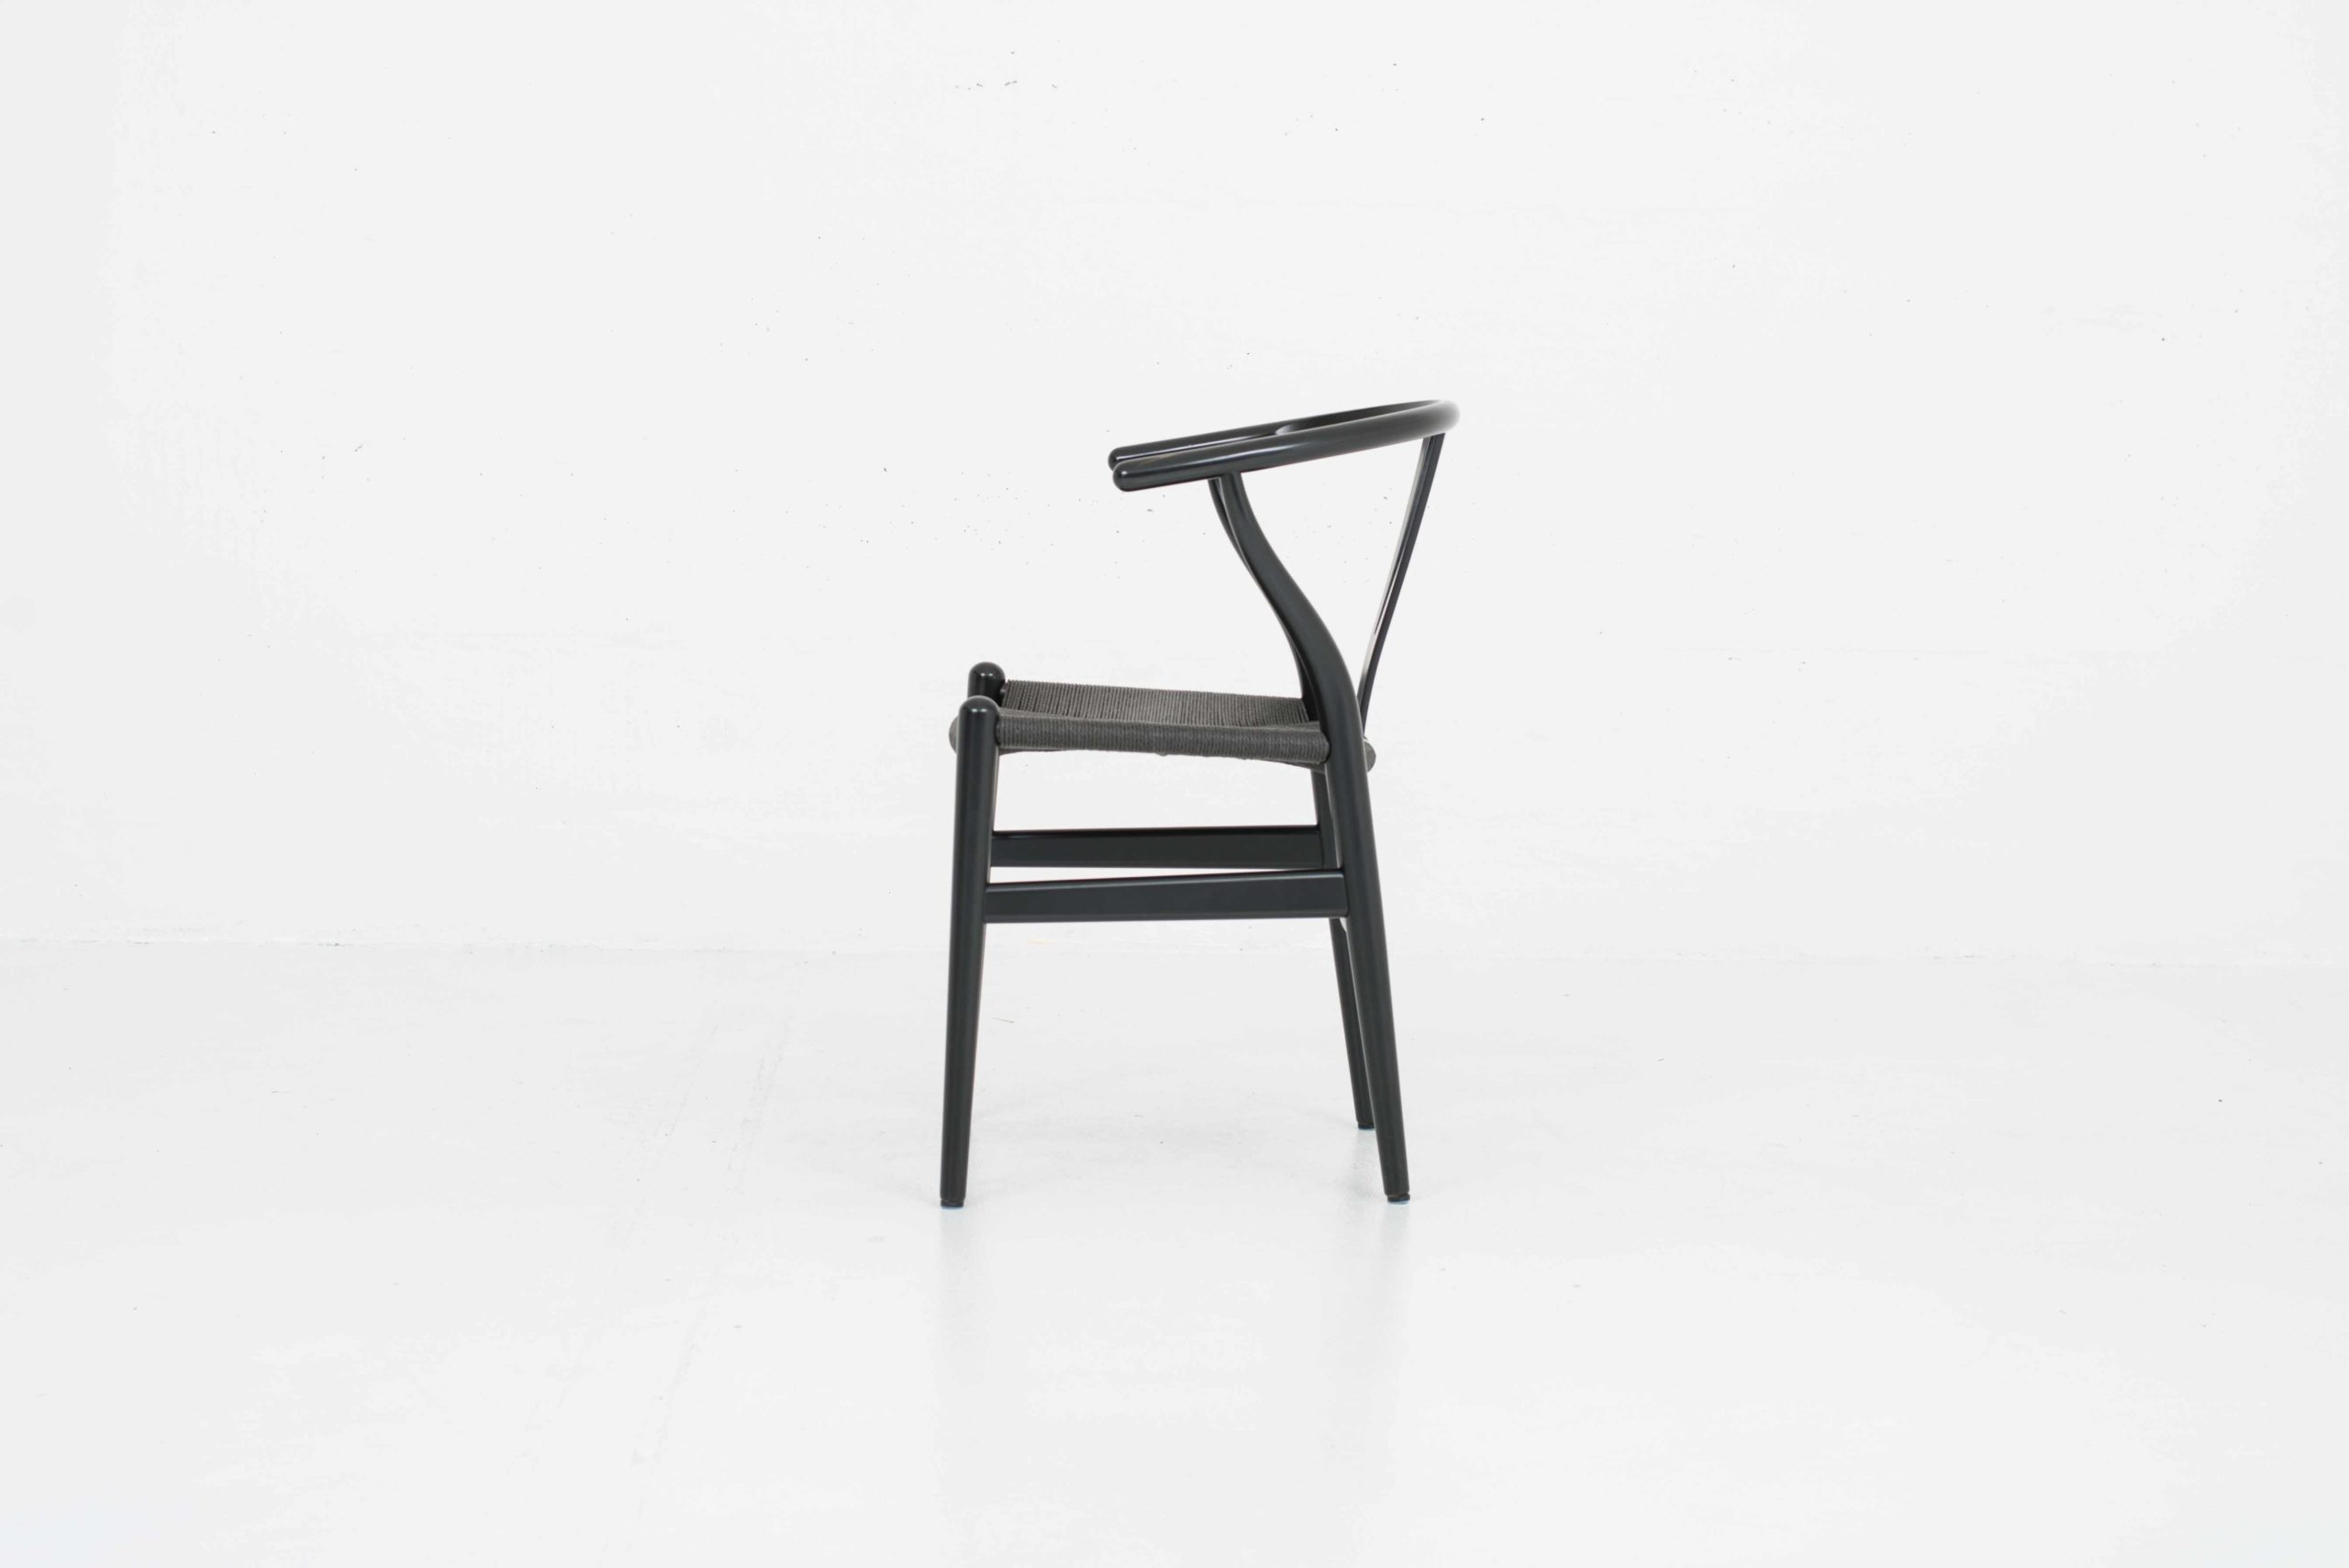 Hans J. Wegner Wishbone Chair von Carl Hansen &amp; Søn, im Viererset-3